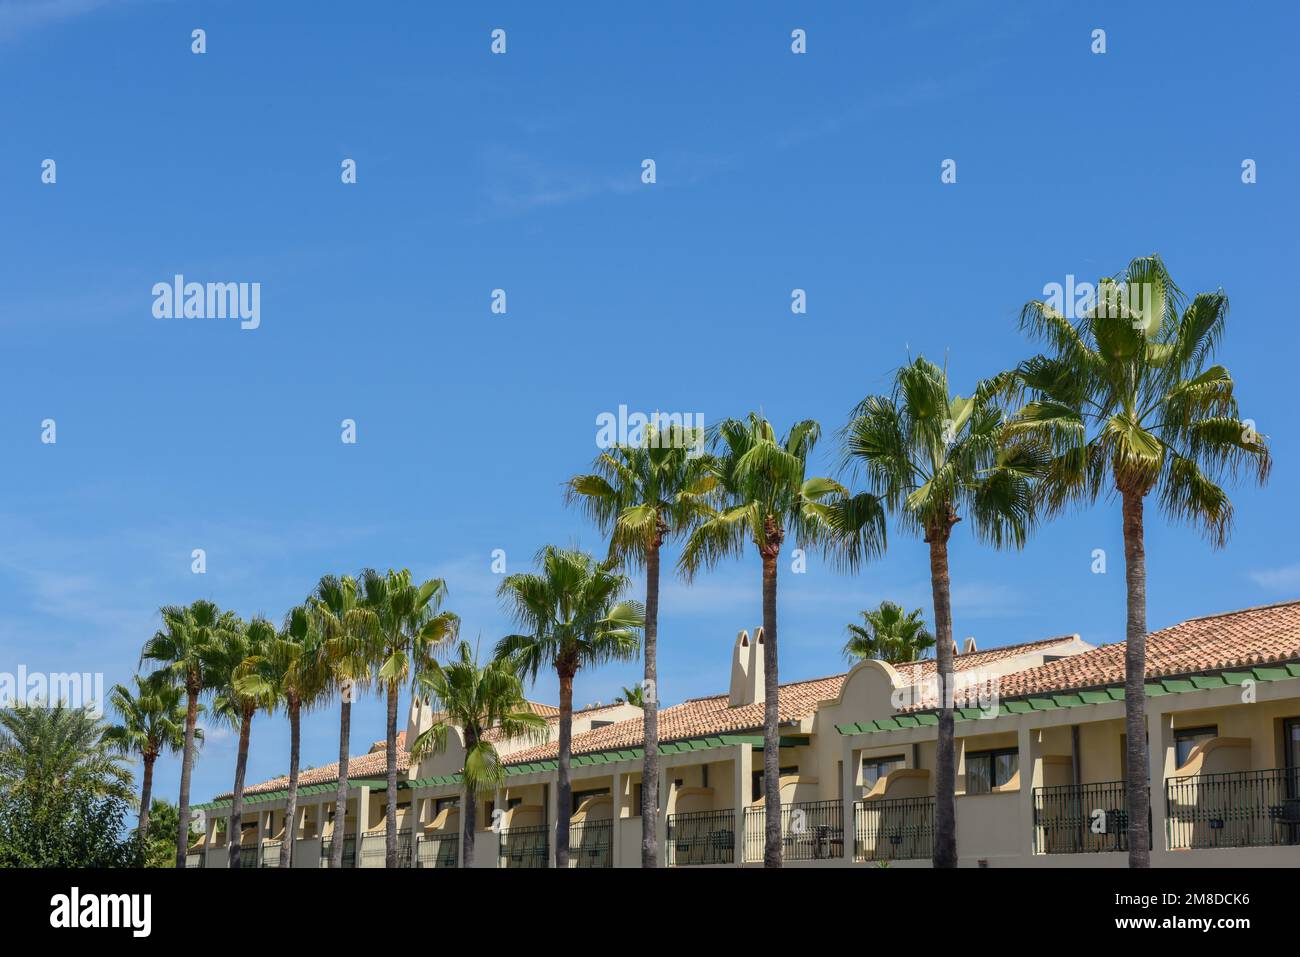 Vue extérieure des bâtiments avec balcons bordés de palmiers Banque D'Images